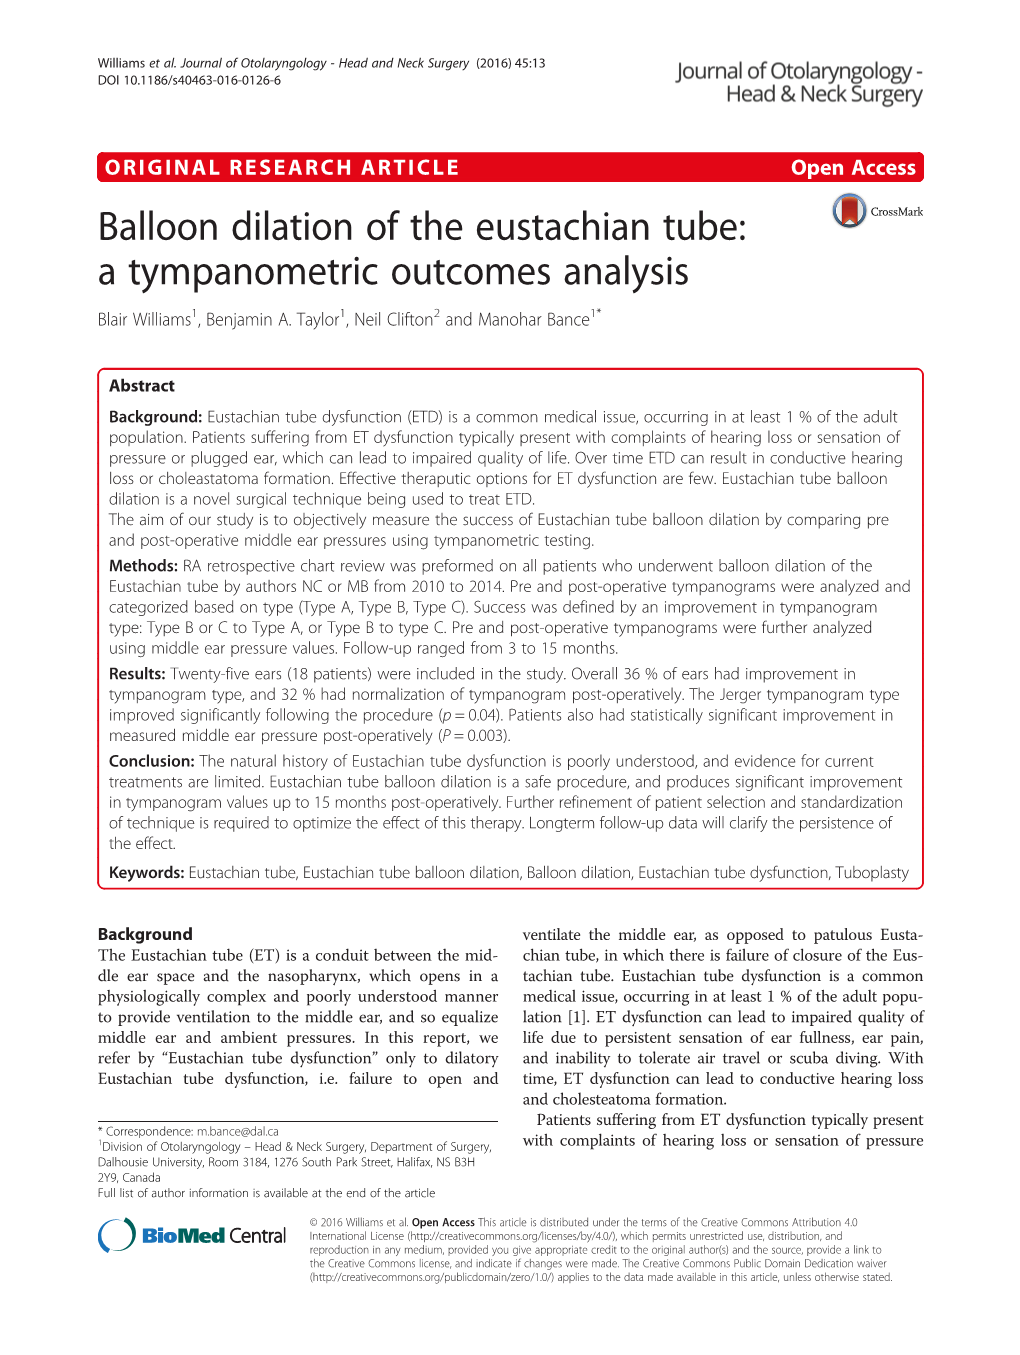 Balloon Dilation of the Eustachian Tube: a Tympanometric Outcomes Analysis Blair Williams1, Benjamin A